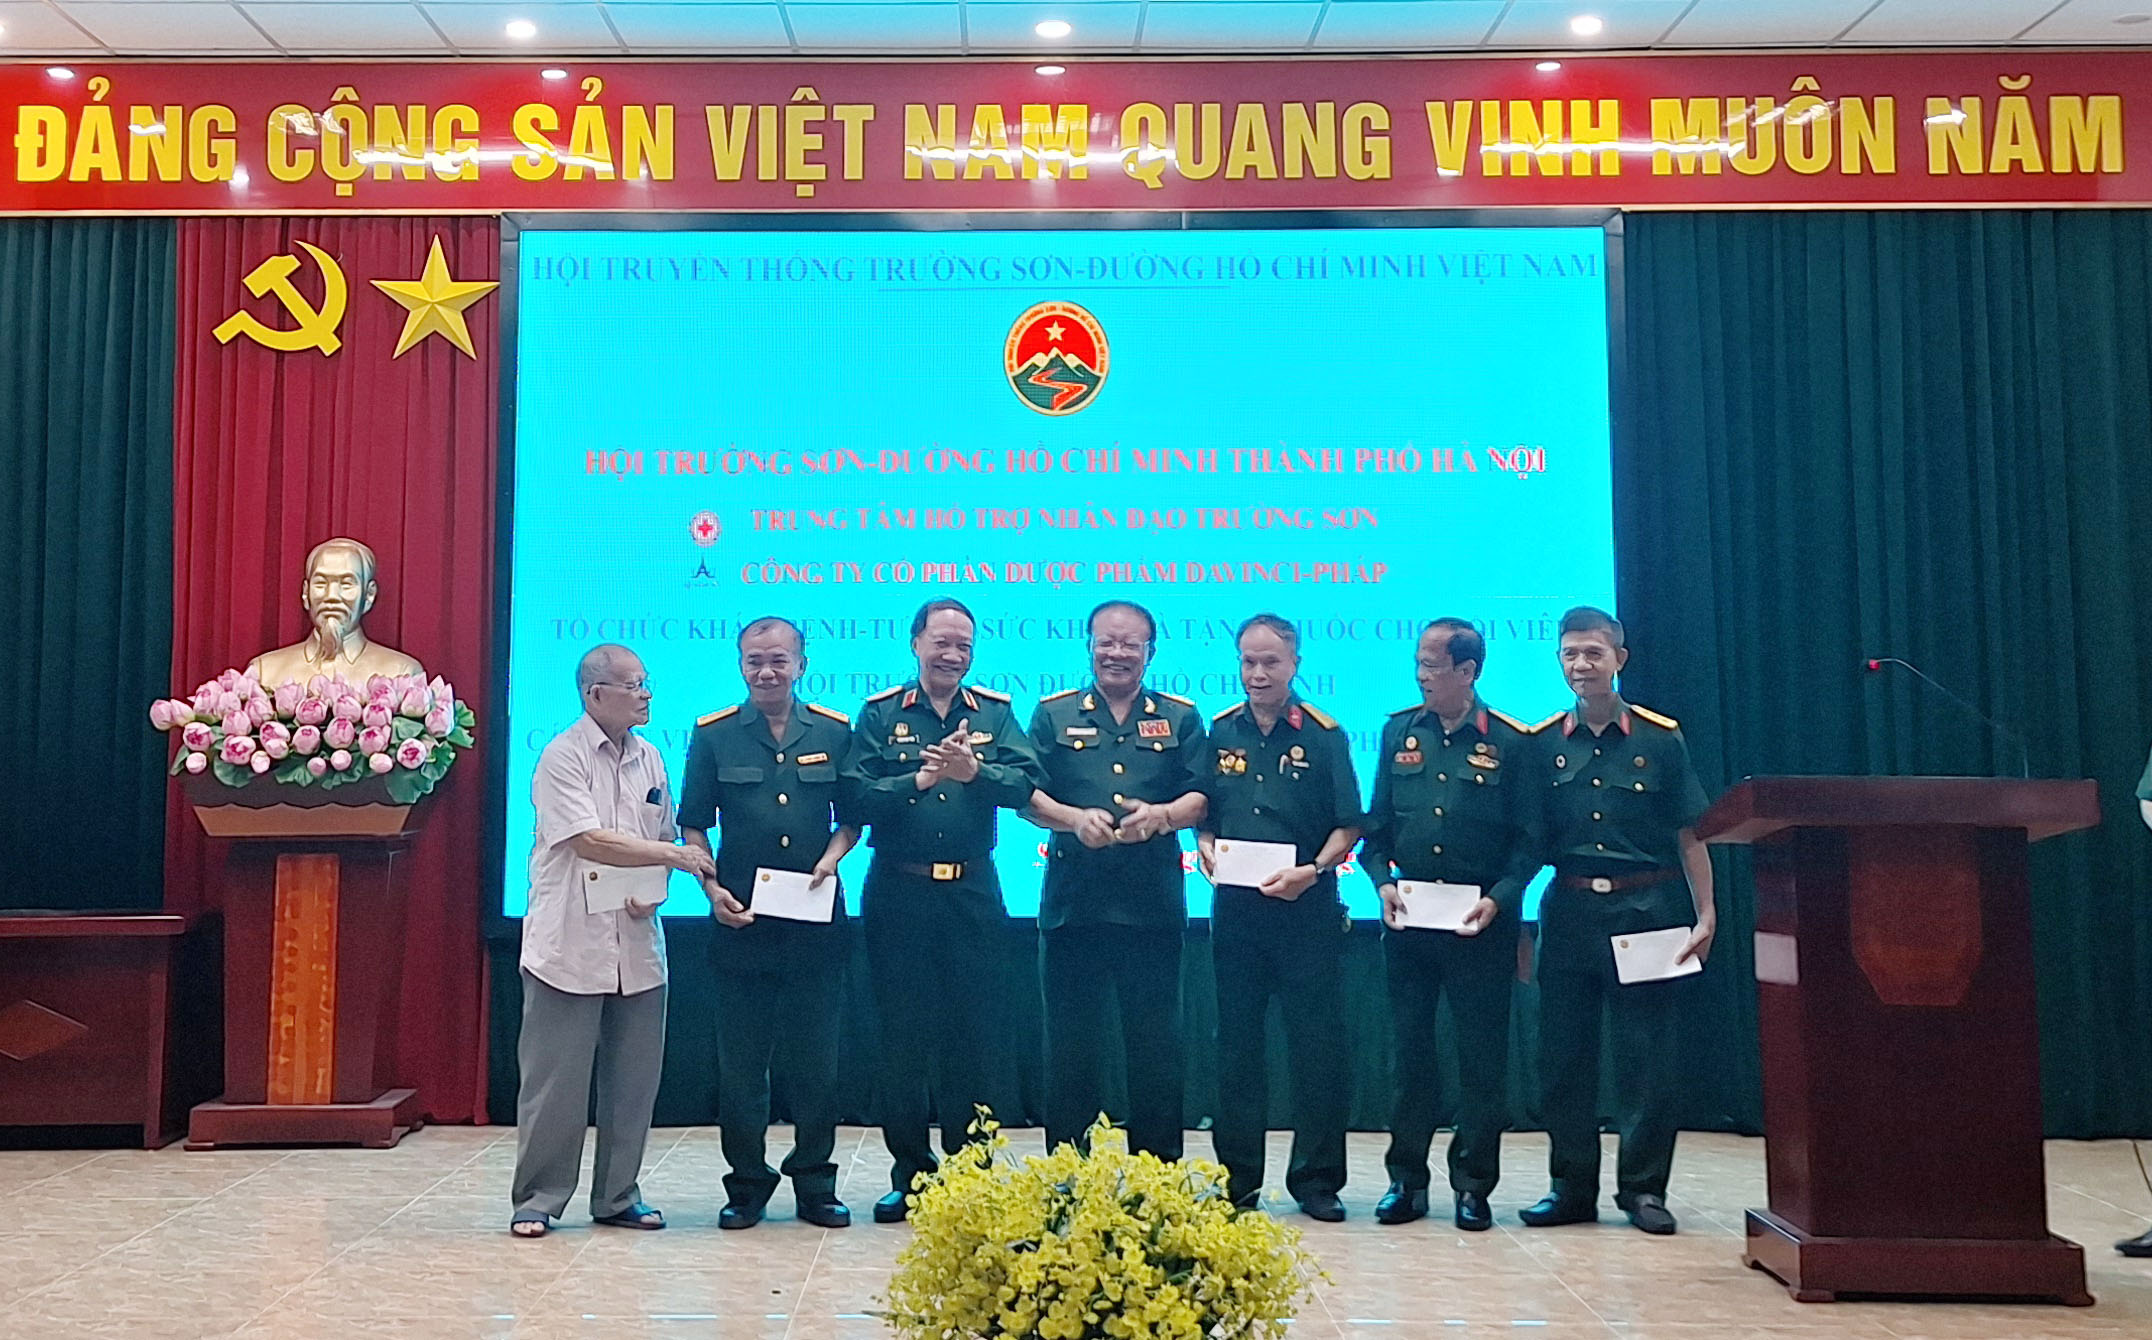 Hội Trường Sơn Việt Nam trao quà và khám bệnh, cấp thuốc miễn phí cho đối tượng chính sách, hội viên Trường Sơn thành phố Hà Nội.